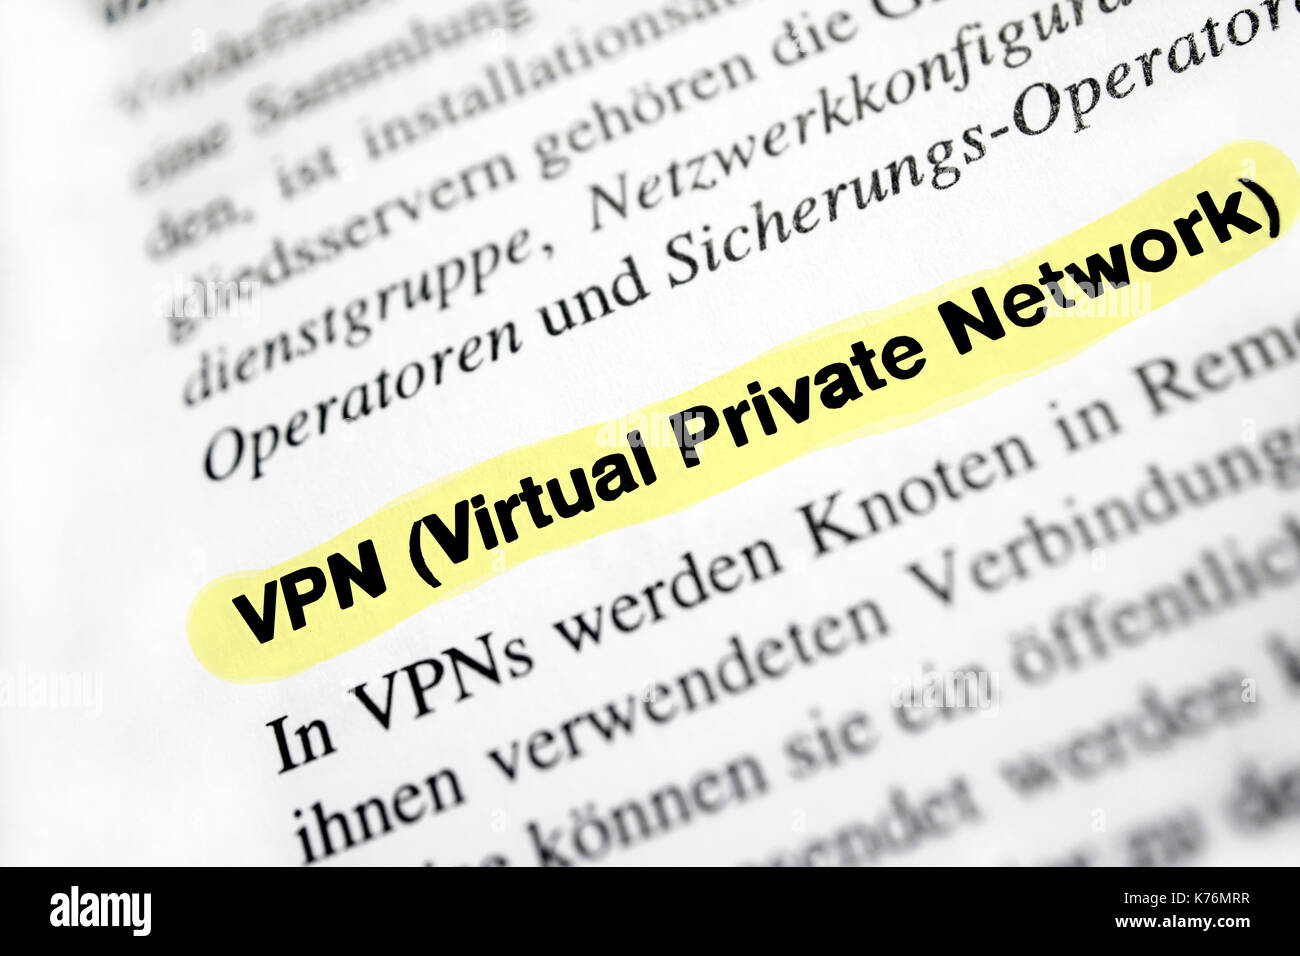 Rete privata virtuale (VPN) Foto Stock